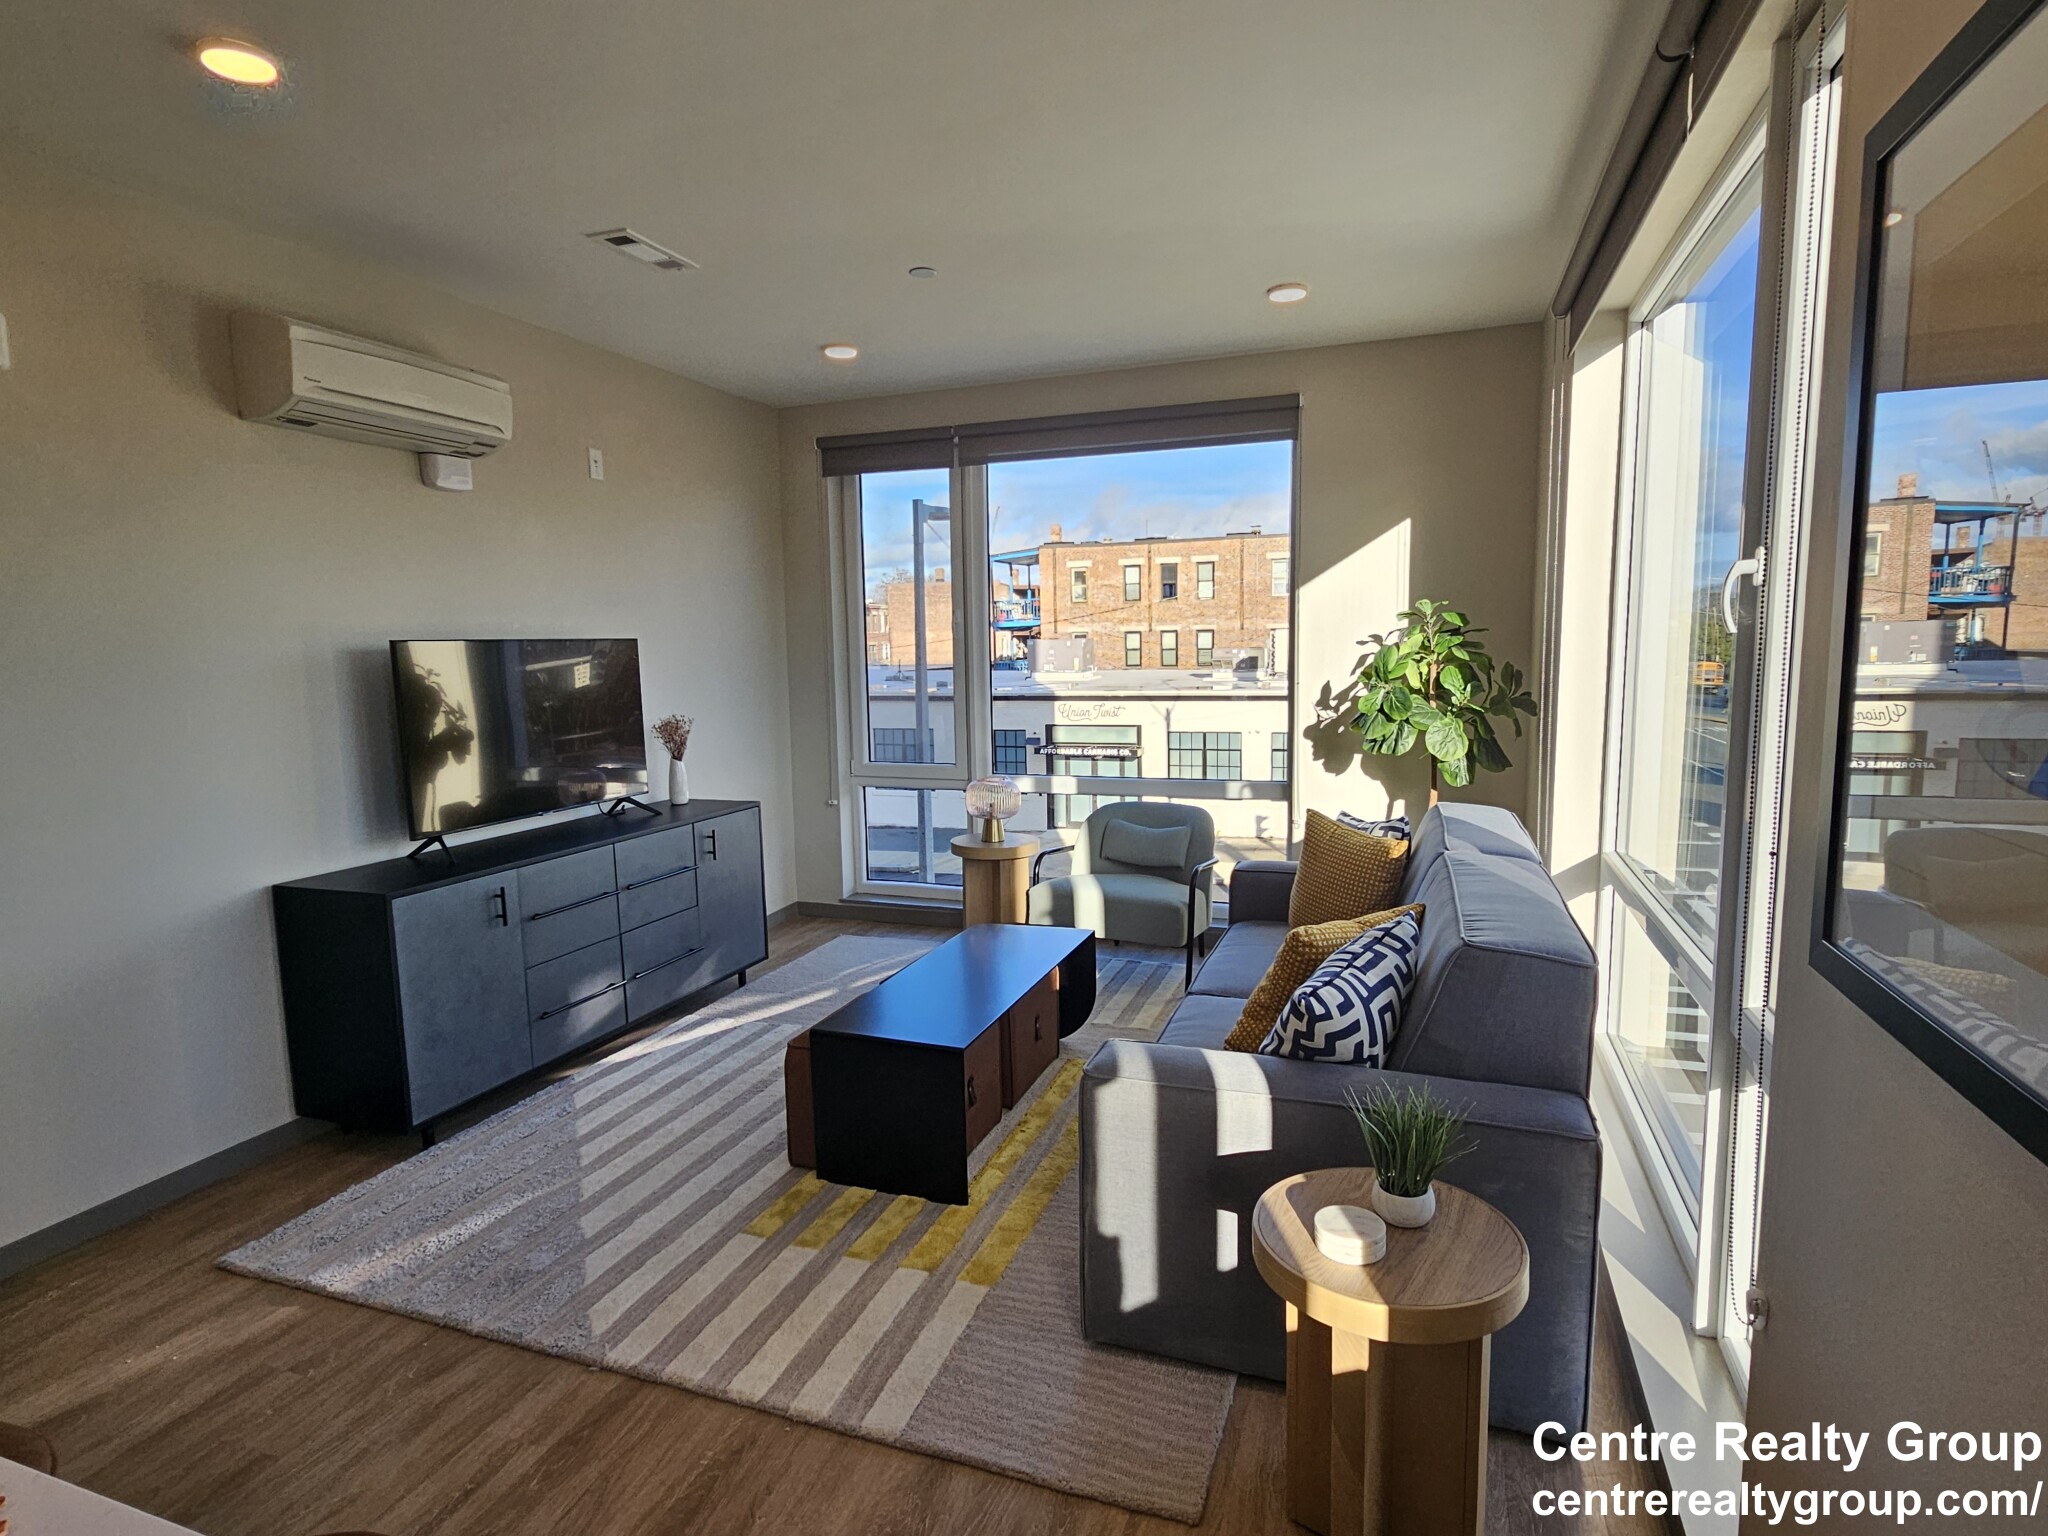 Photos of apartment on Brighton,Boston MA 02134